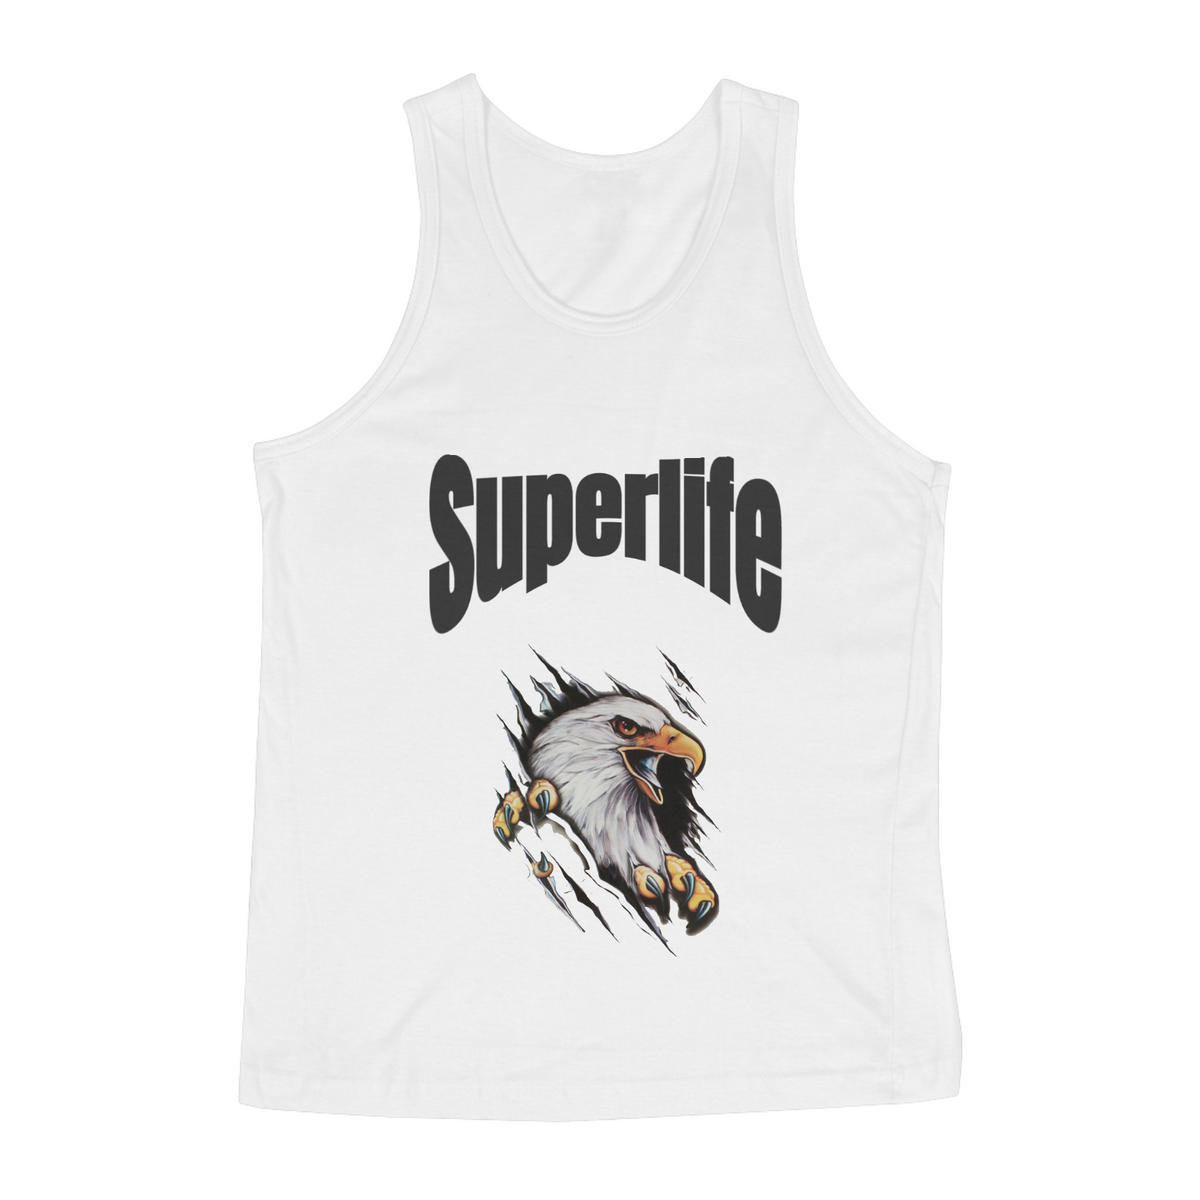 Nome do produto: Camisa regata superlife